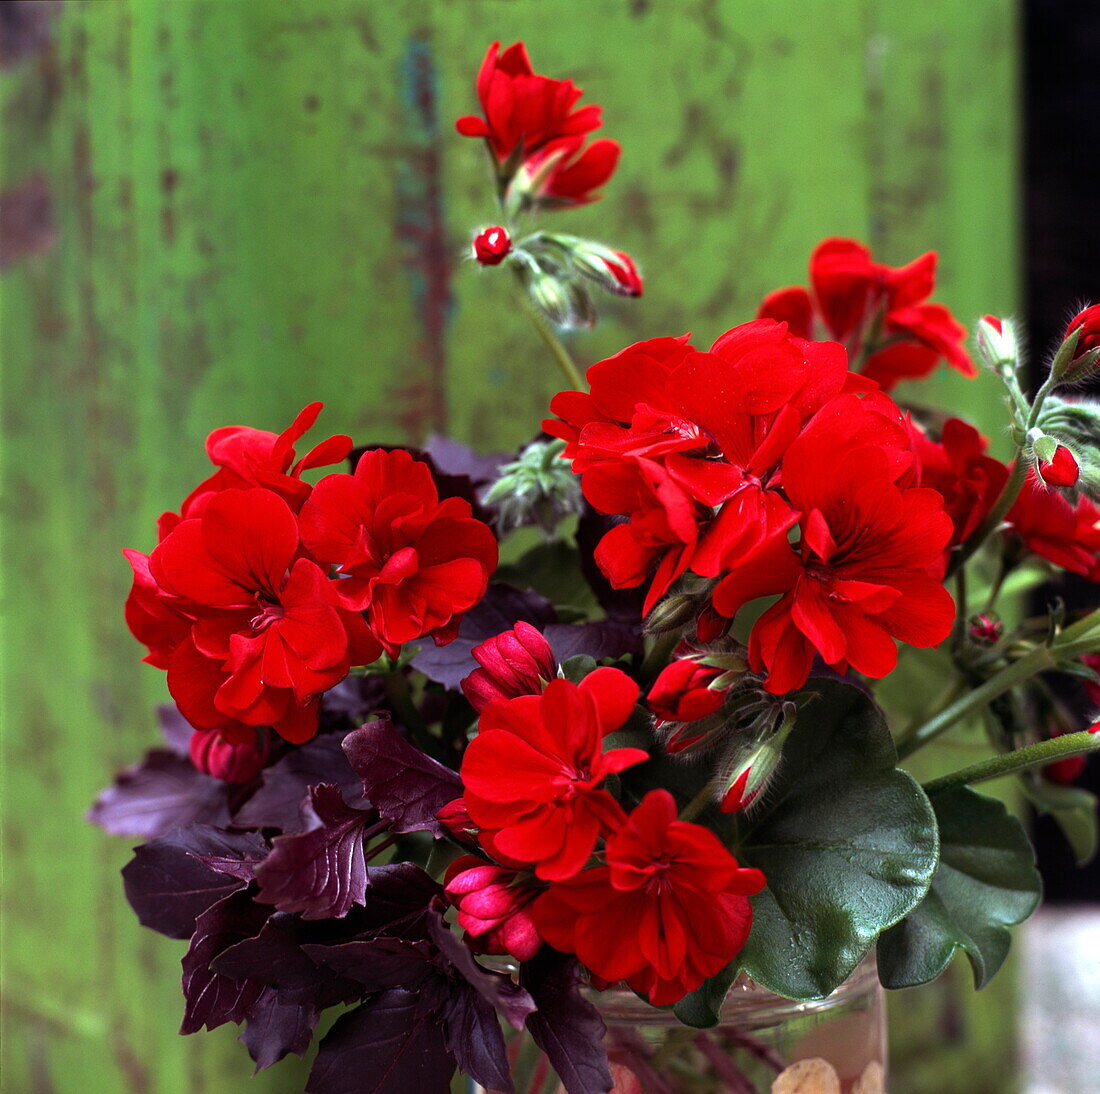 Red Geraniums-Pelargonium Caligula (Comfort) Purple basil- Ccimum basilicum Purpureum (best wishes good luck)